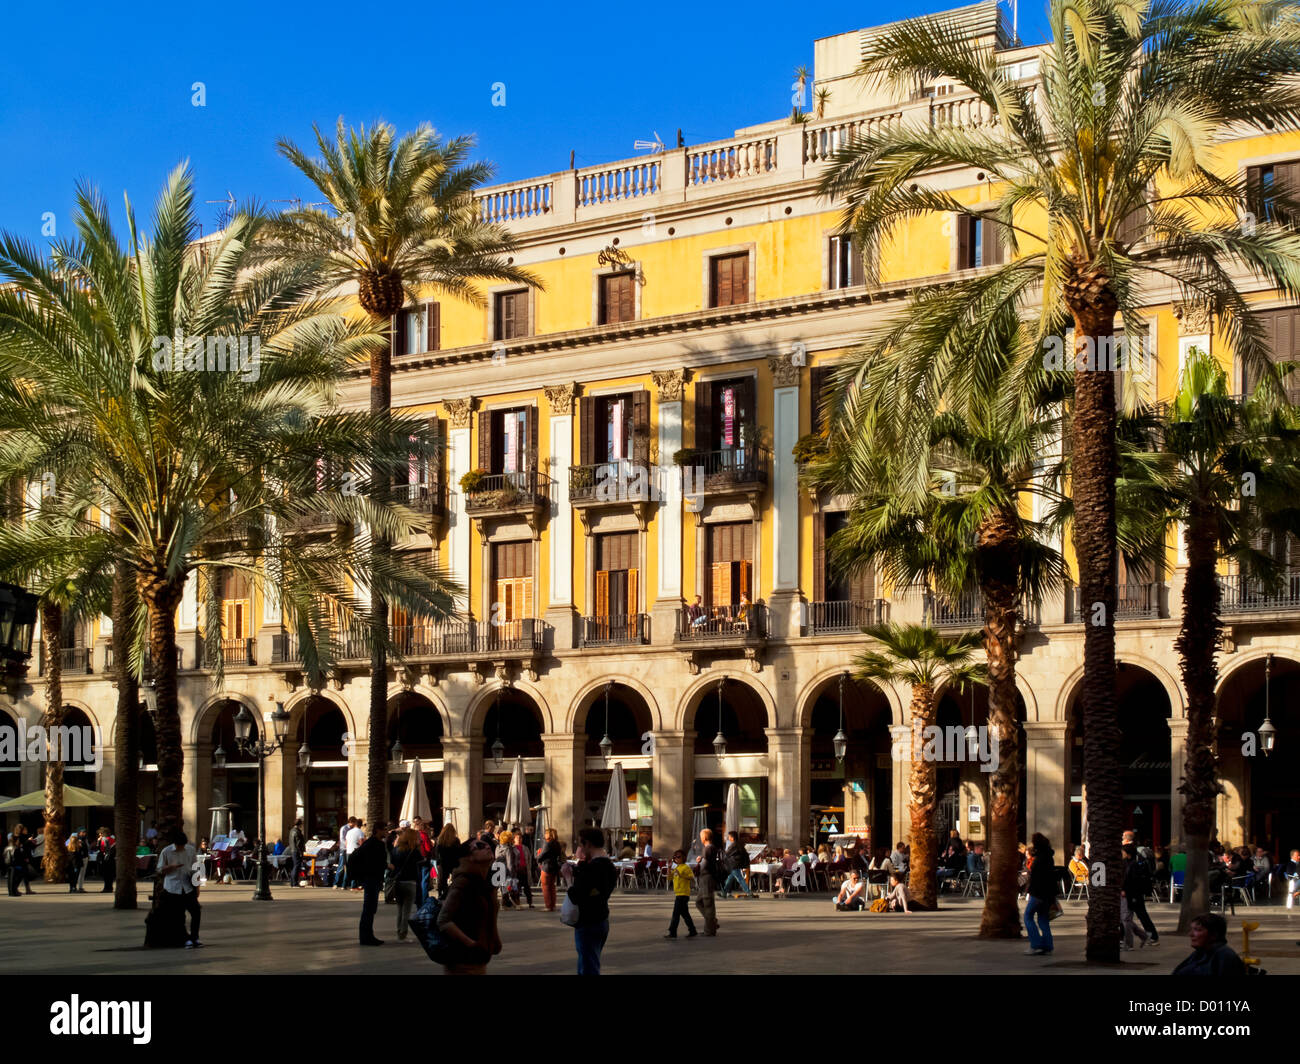 Placa Reial ein Quadrat in alte Stadt Barri Gotic Gegend von Barcelona Stadtzentrum Katalonien Spanien mit Palmen und Straßencafés Stockfoto